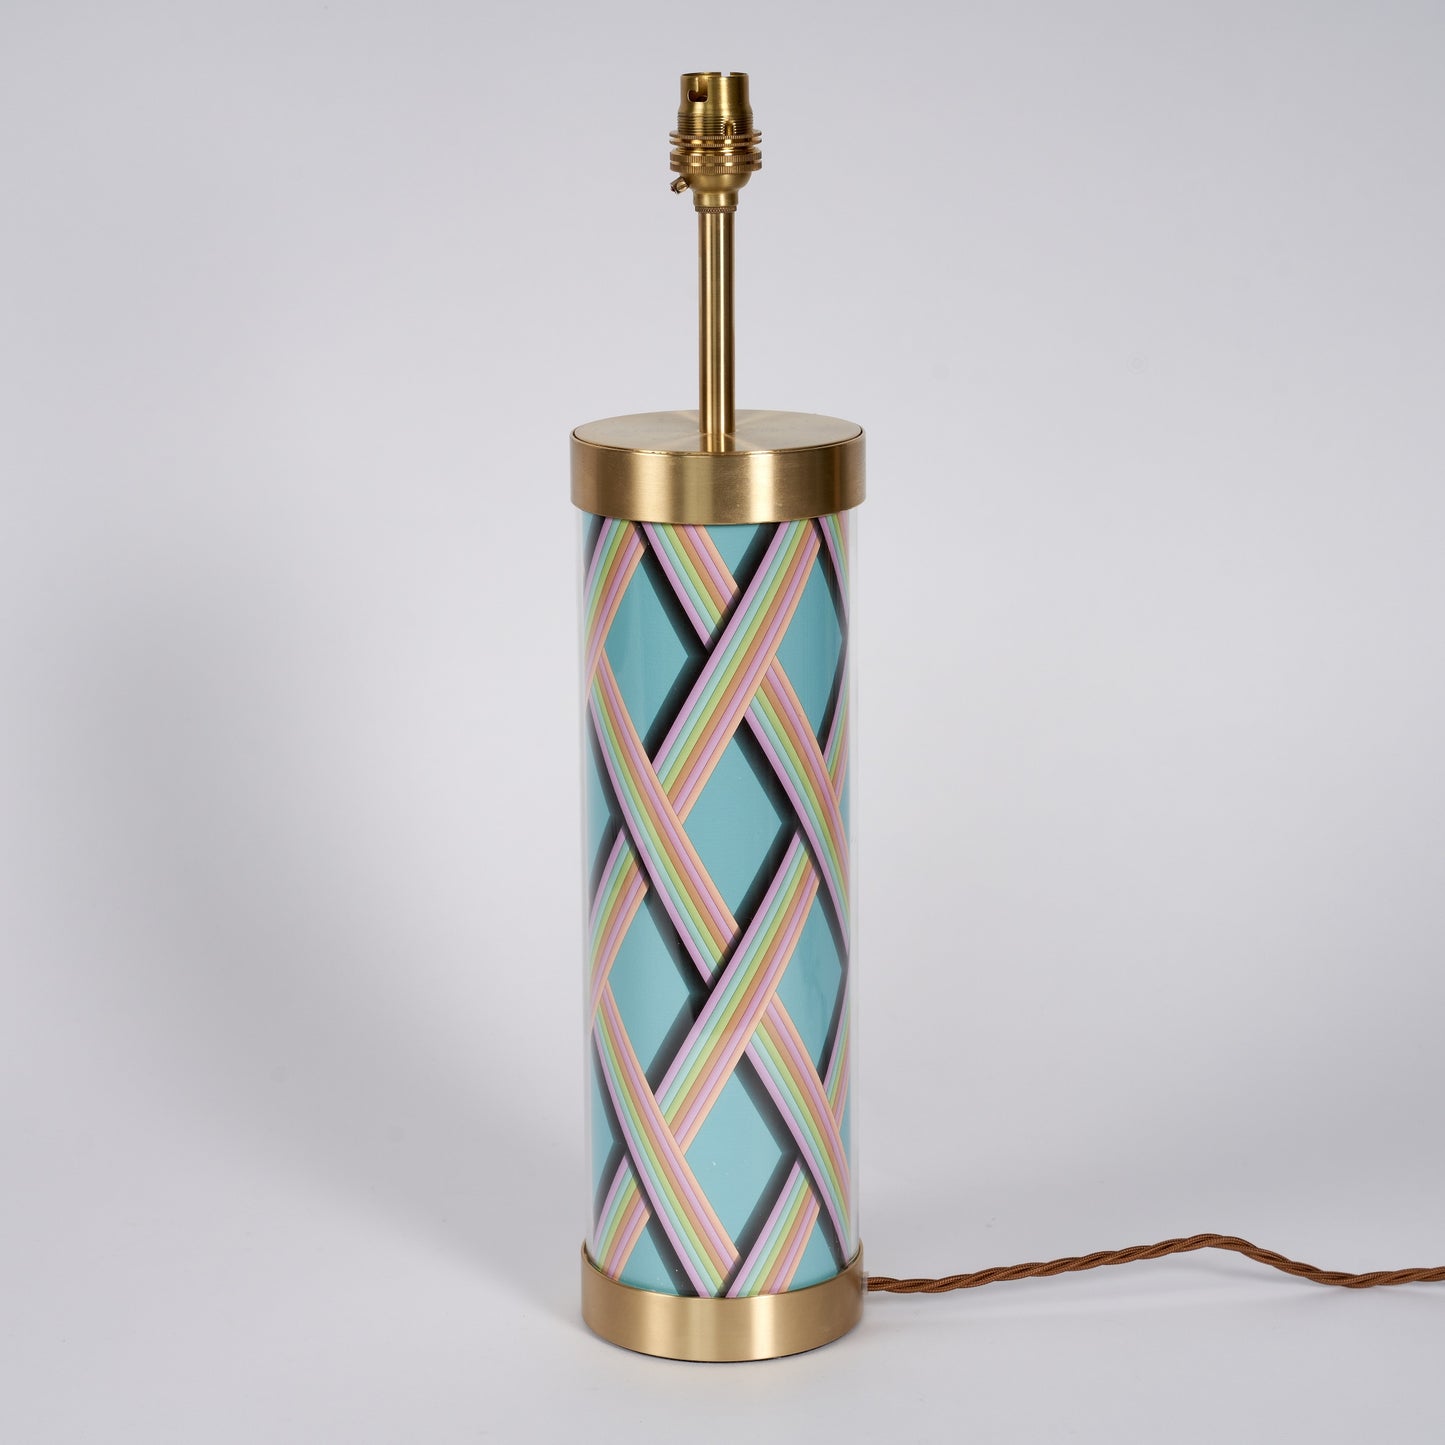 Trellis Work - Light Teal Glass & Brass Lamp